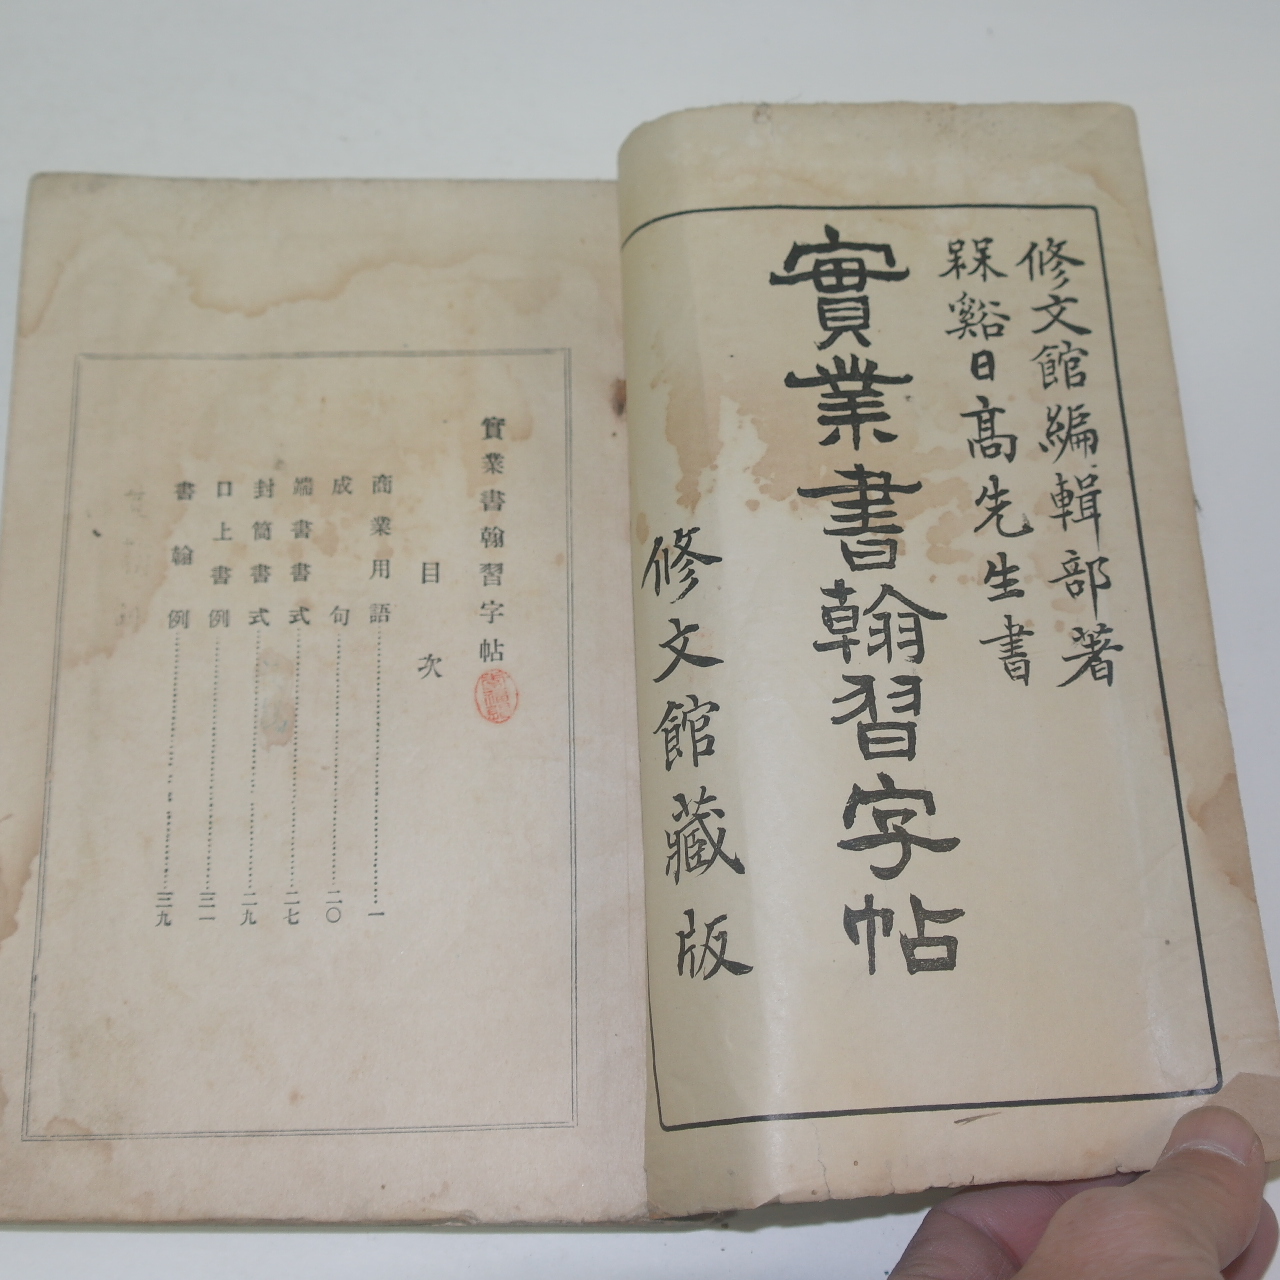 1928년 일본간행 실업서한습자첩(實業書翰習字帖)